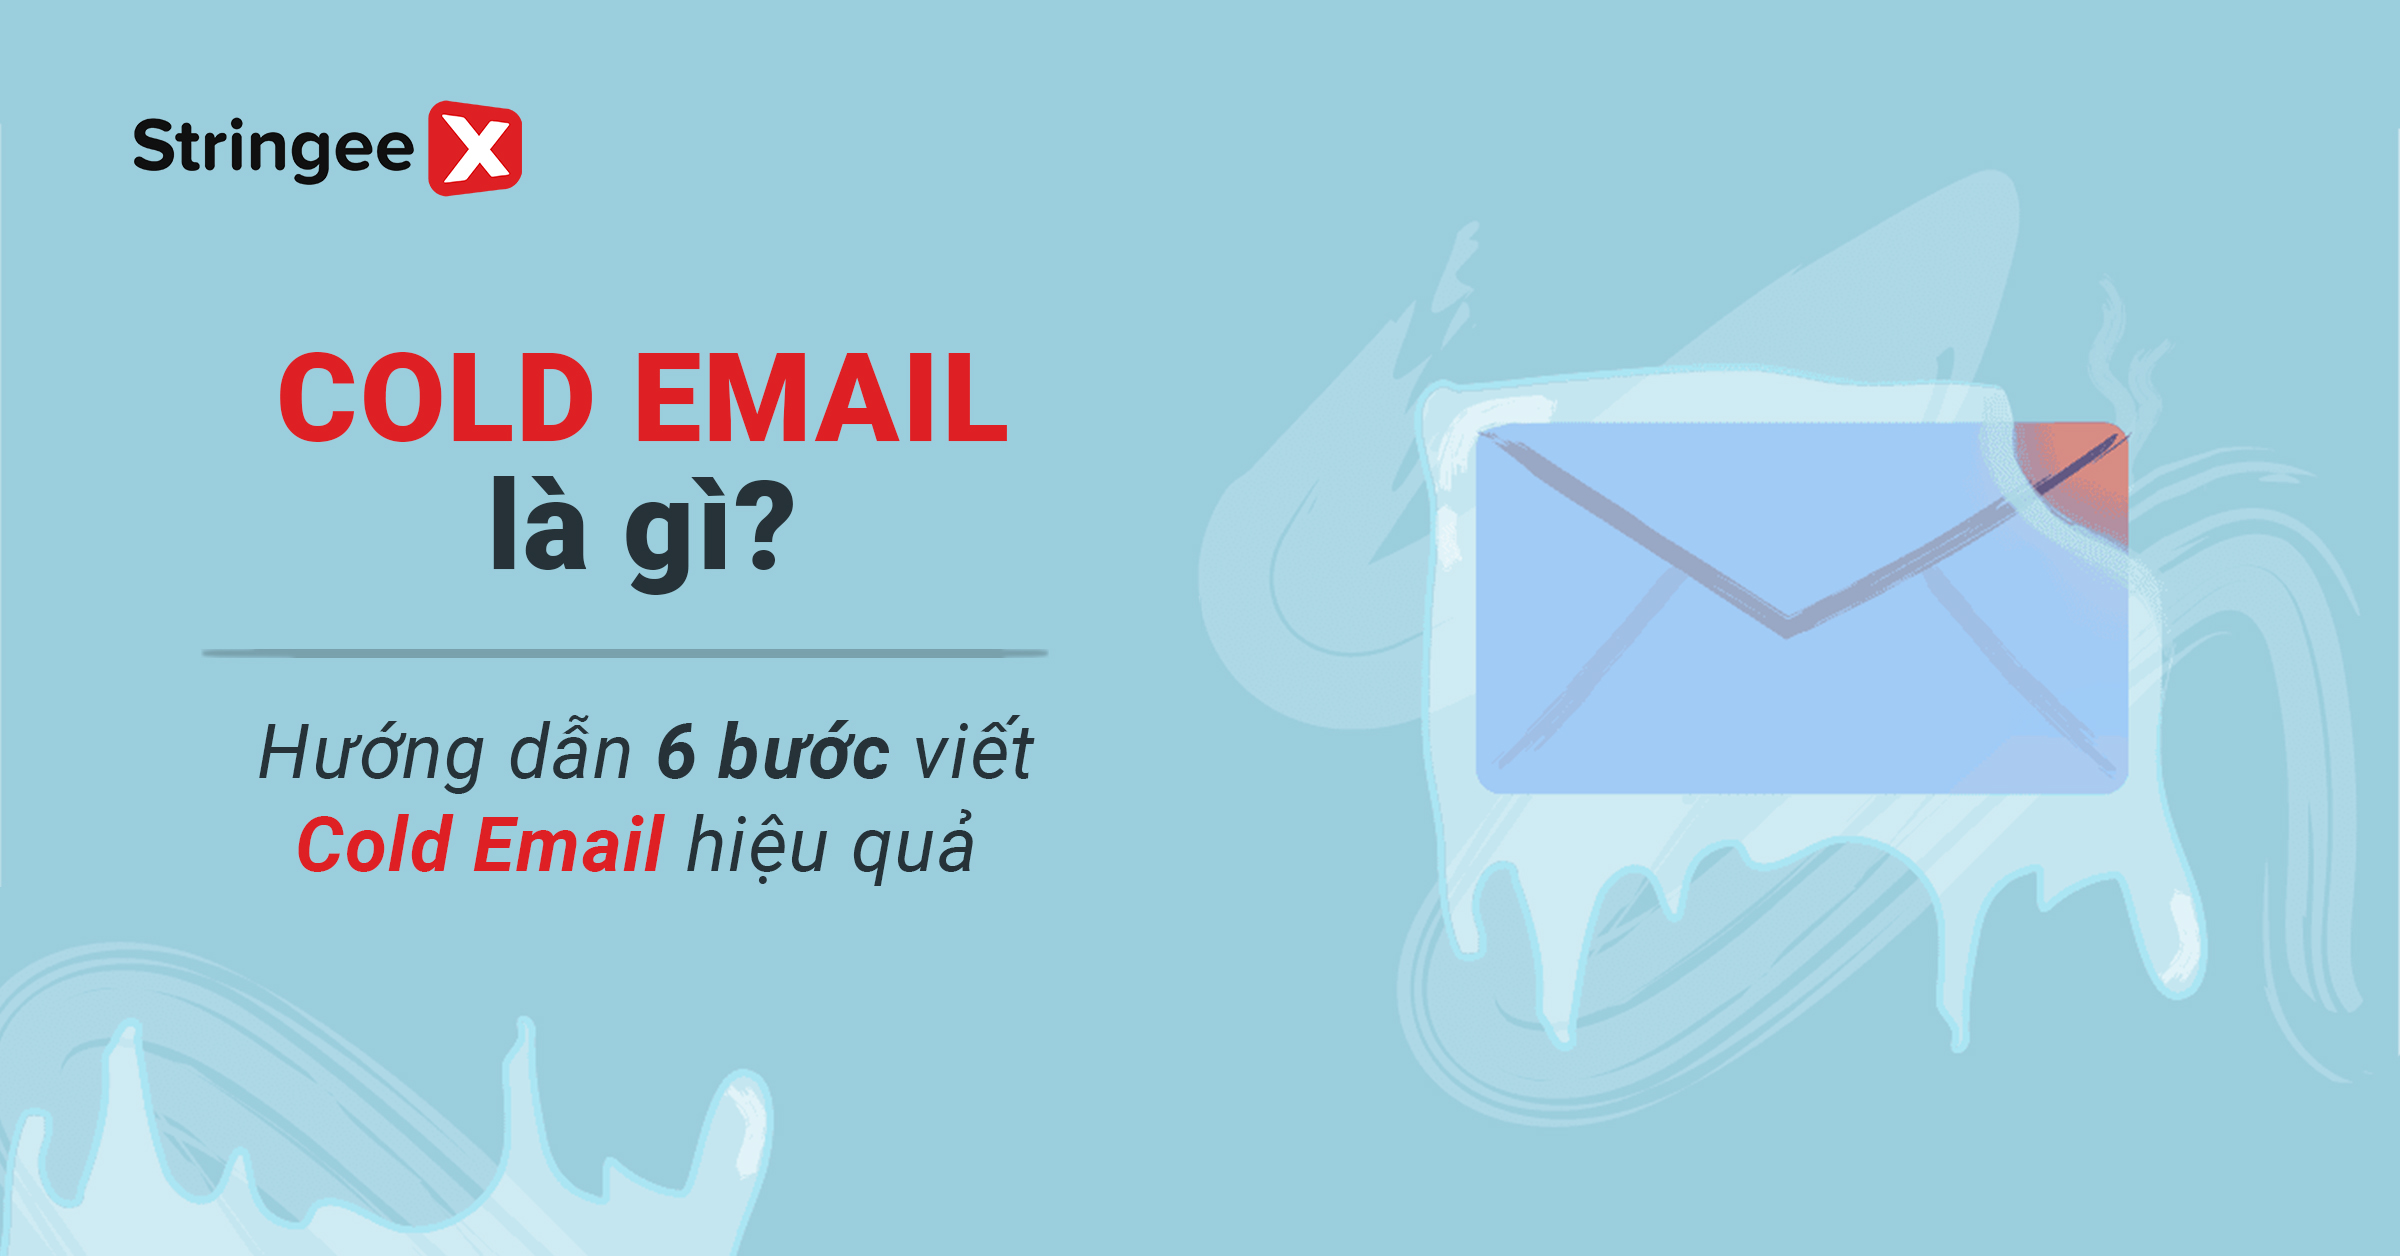 Cold email là gì? Hướng dẫn 6 bước viết Cold email hiệu quả